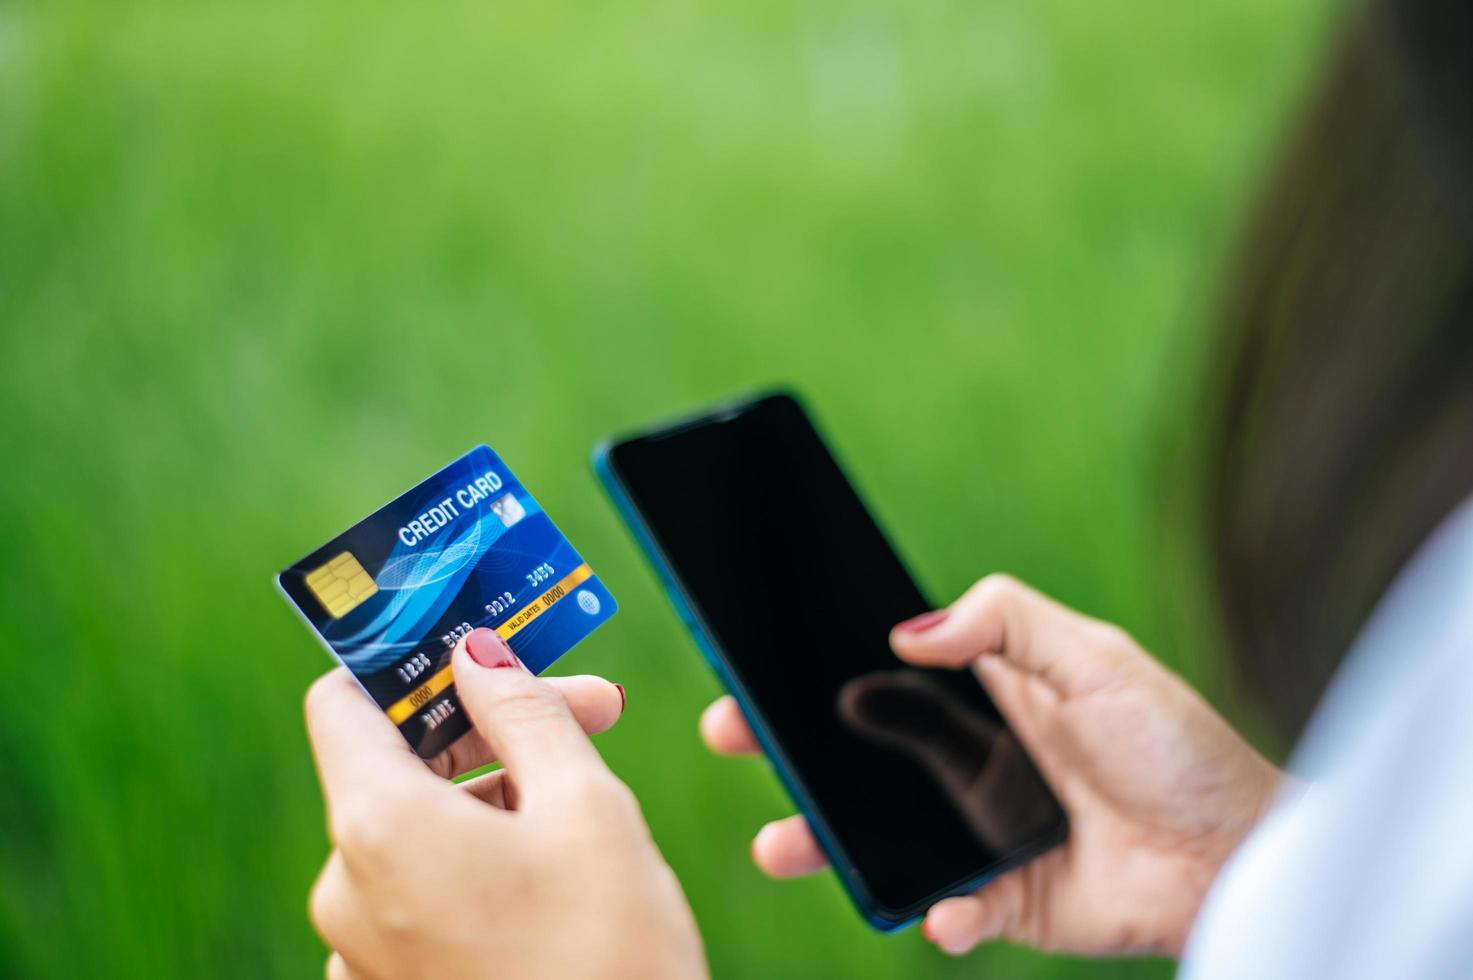 pago de bienes con tarjeta de crédito a través de teléfono inteligente foto